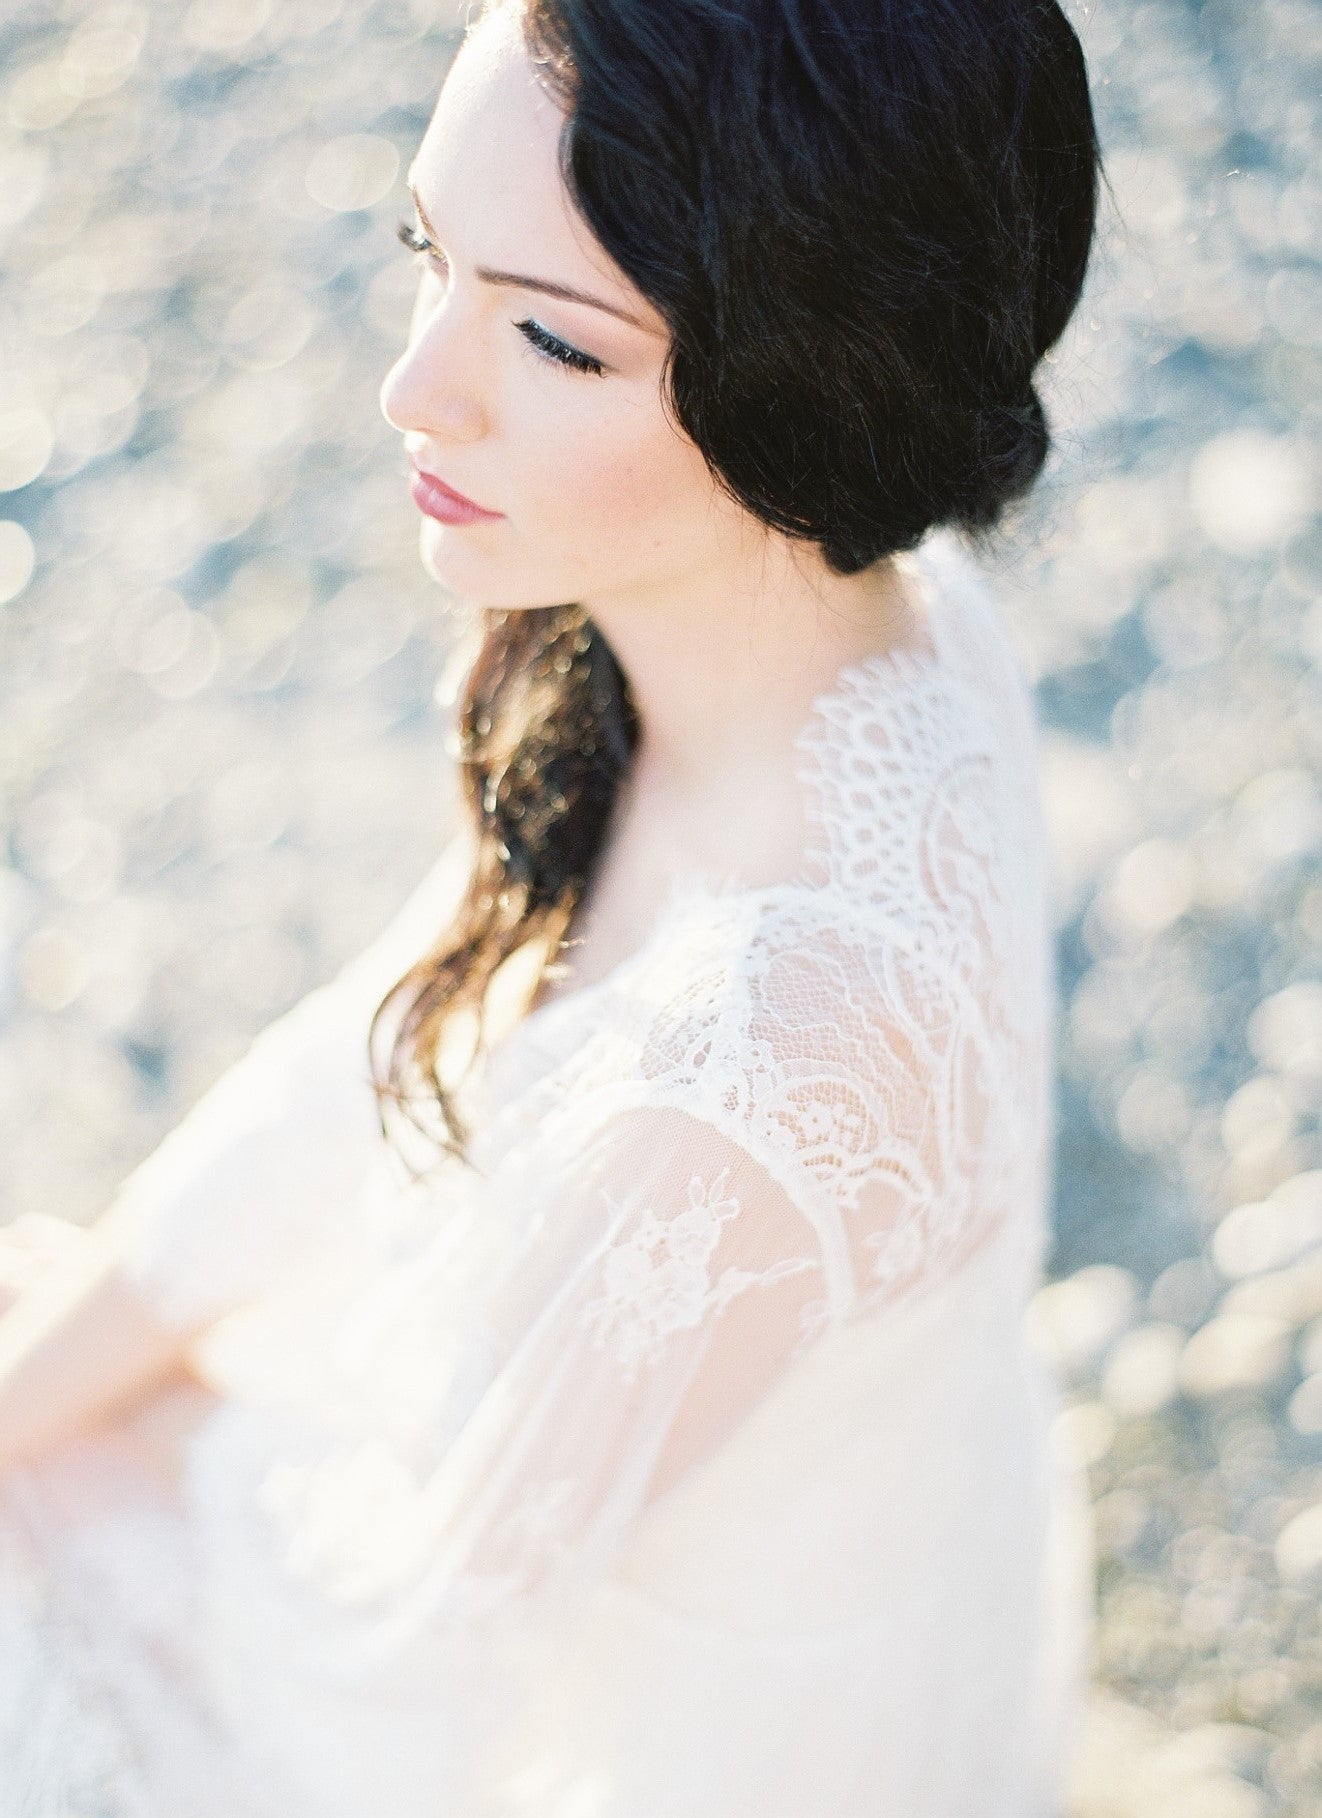 Bridal Lace Robe (#Vela)